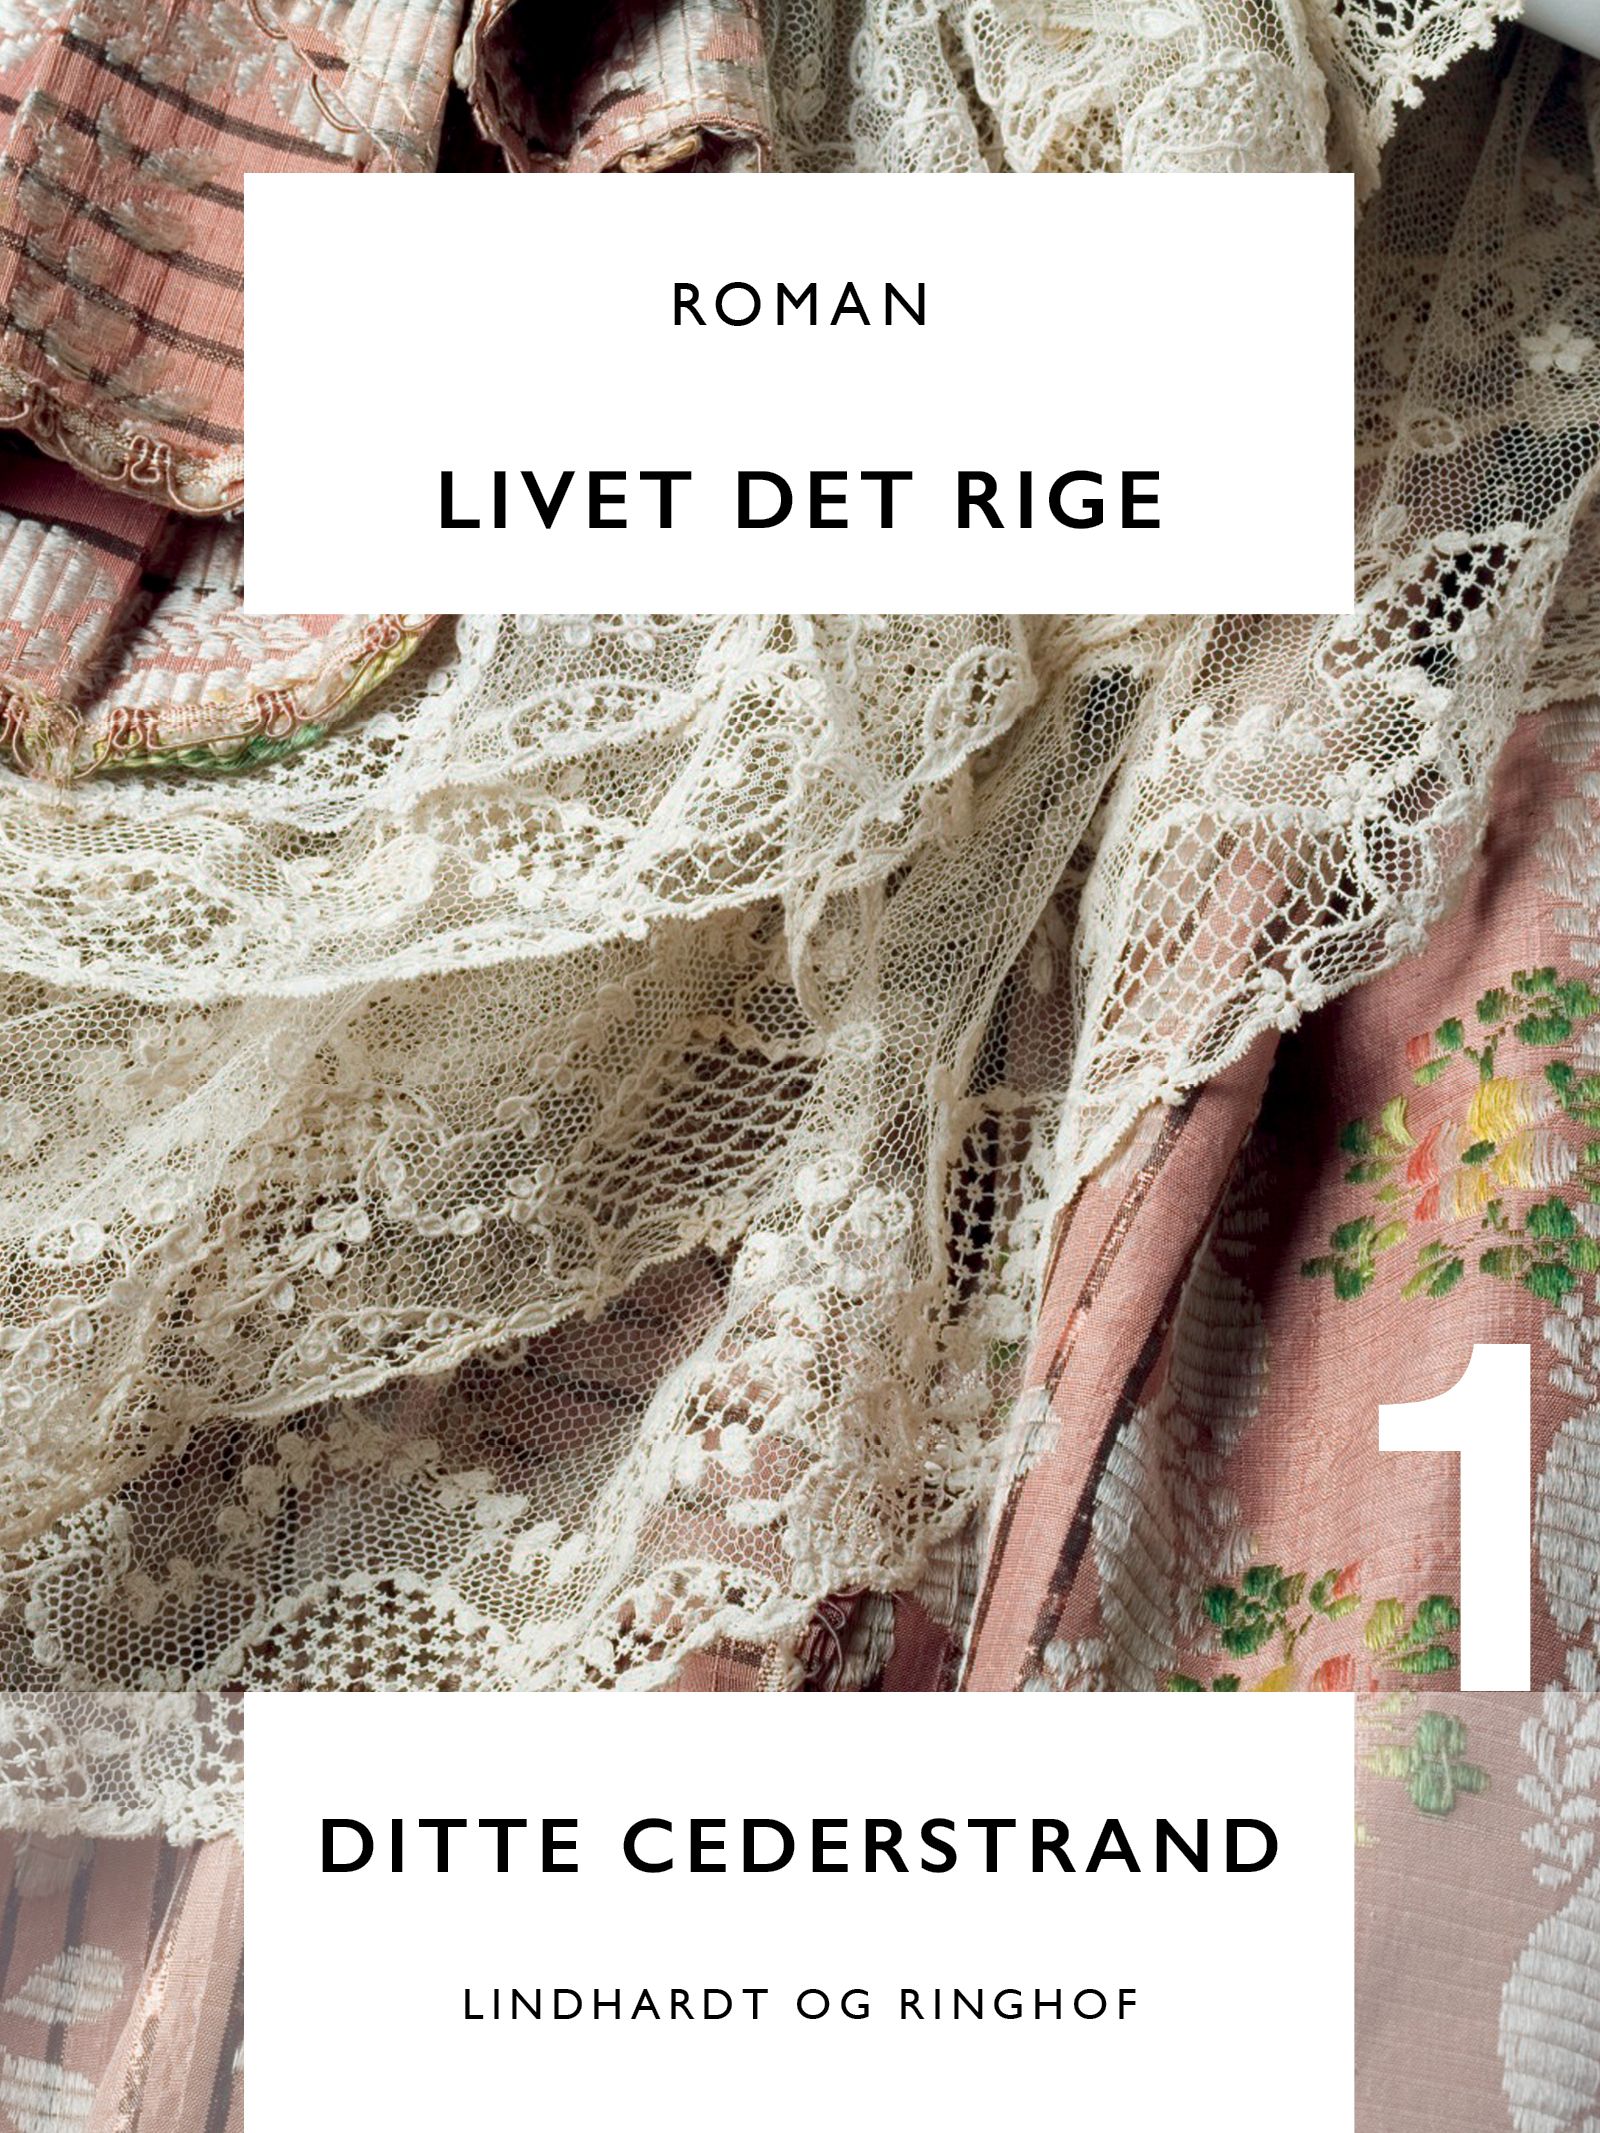 Livet det rige, e-bok av Ditte Cederstrand